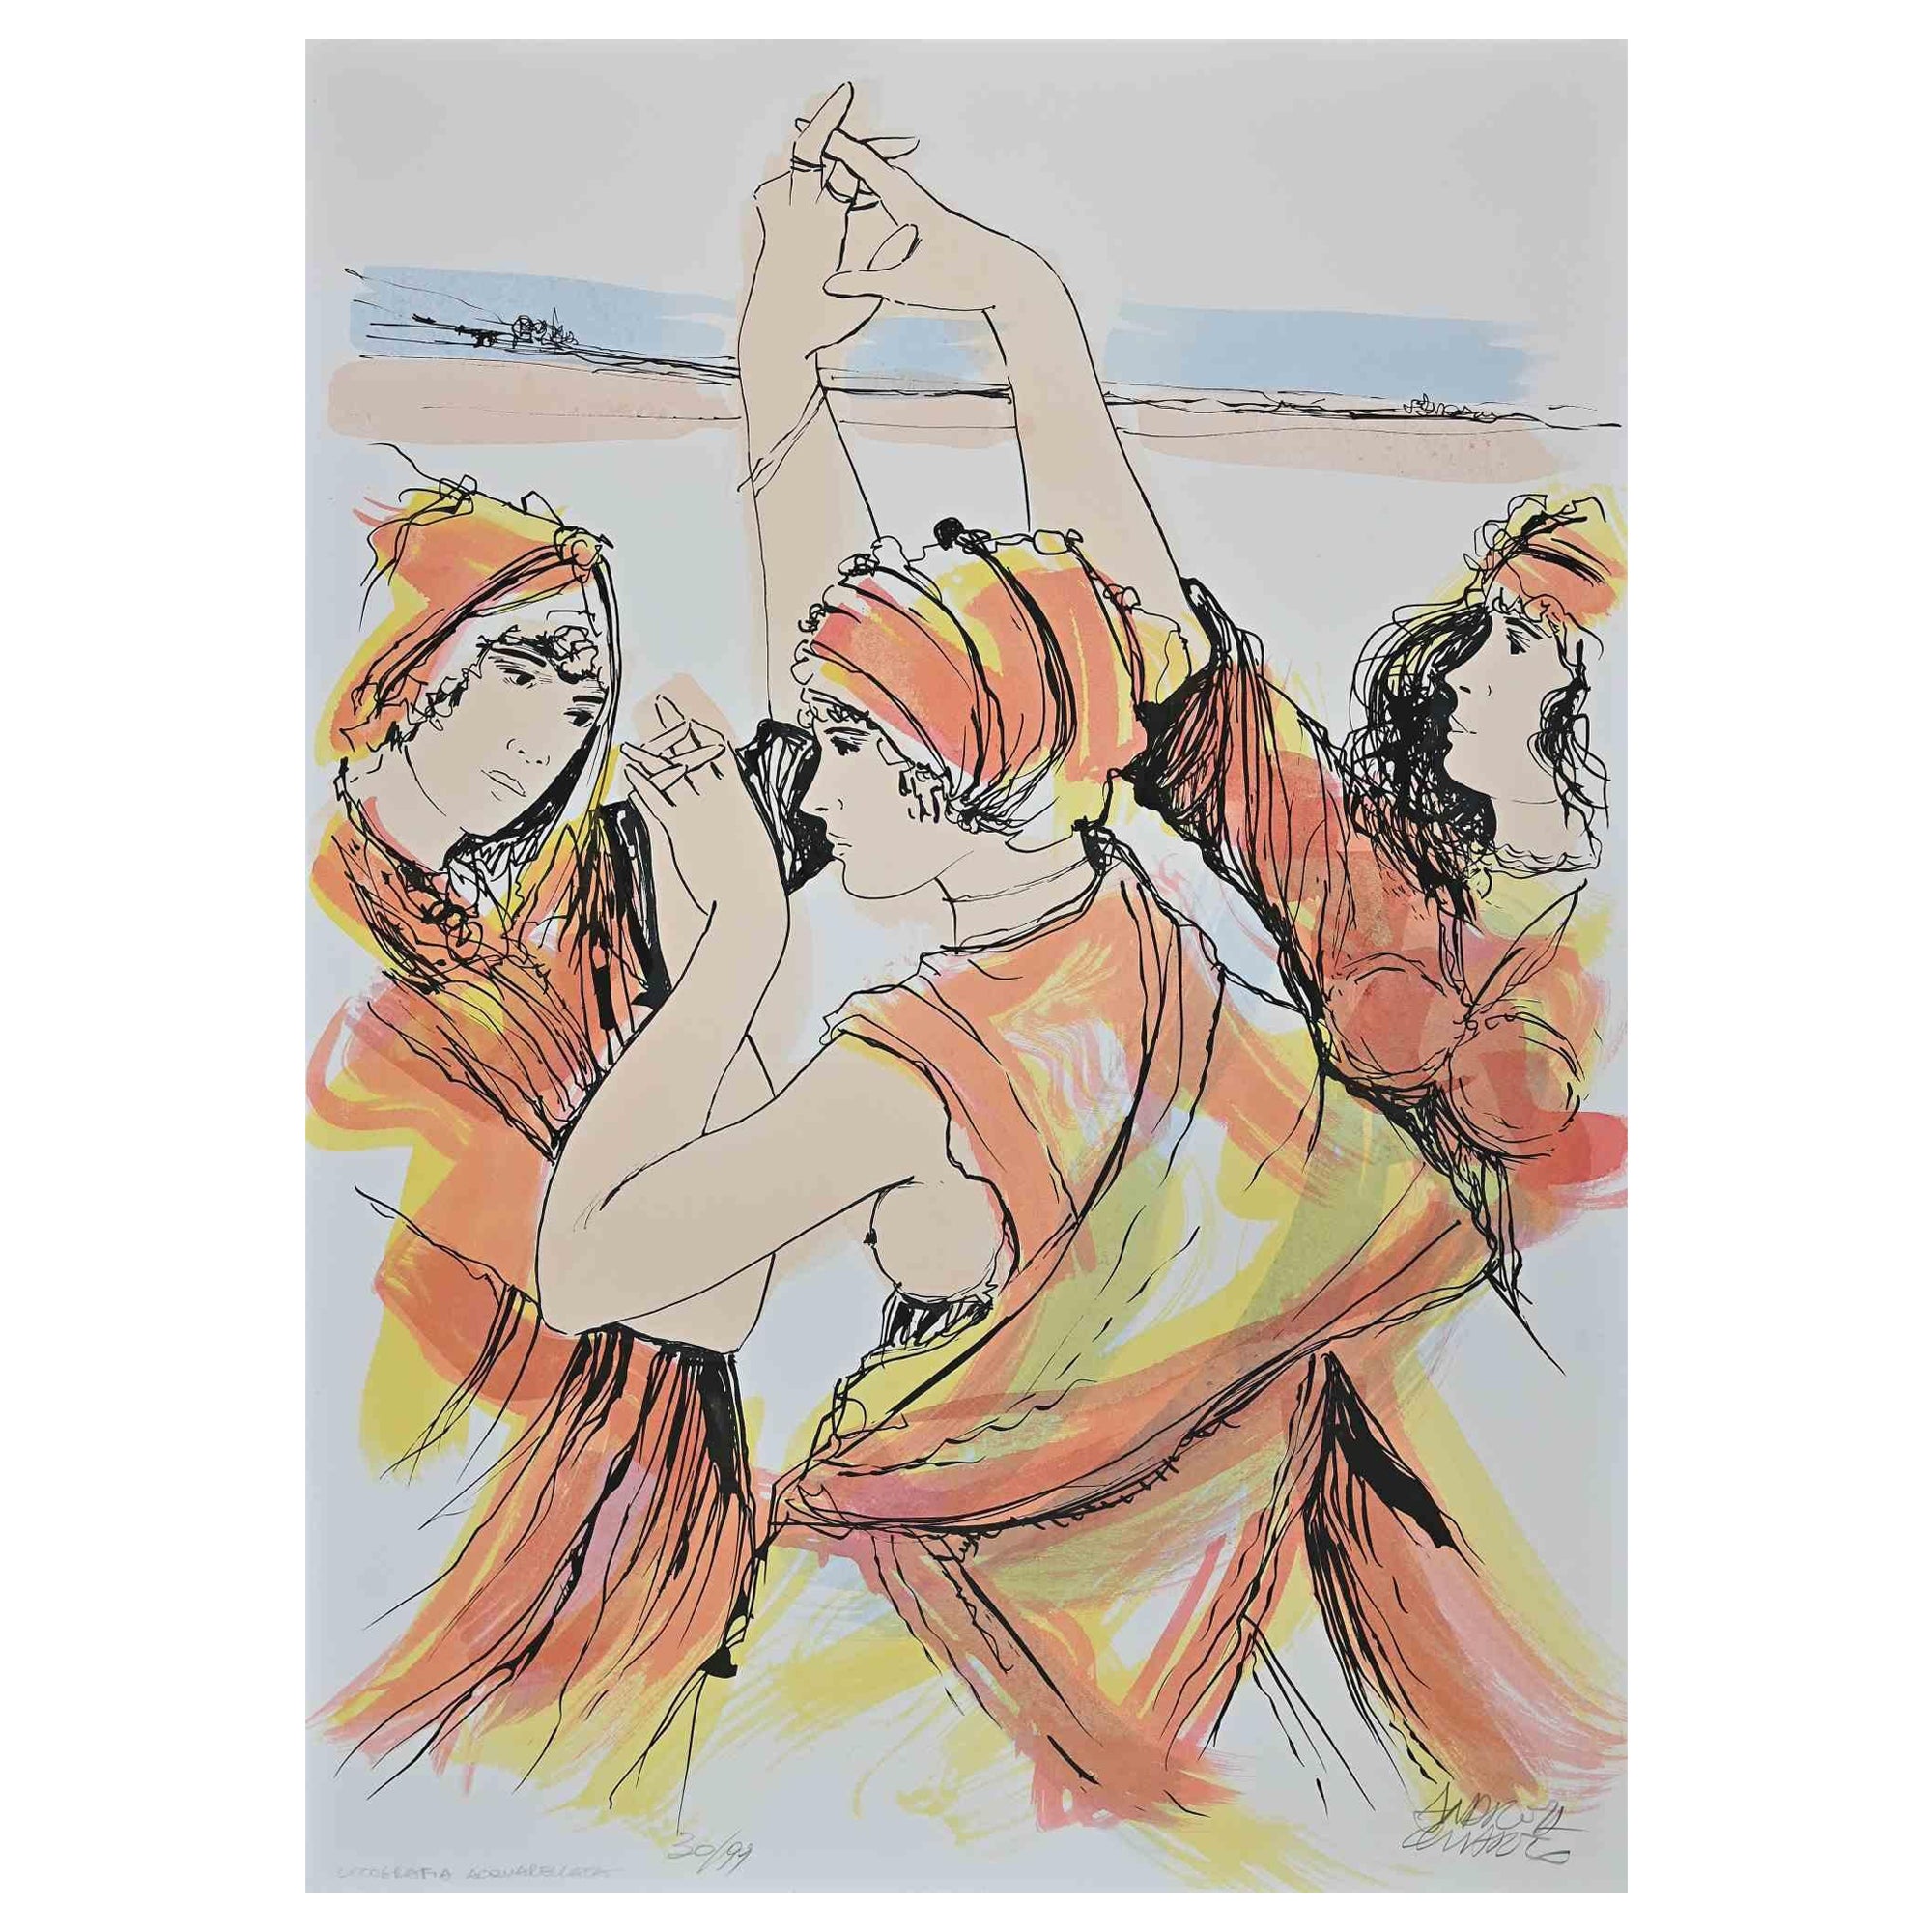 Andrea Quarto Figurative Print - Dancers - Hand-Colored Lithograph by A. Quarto - 1985